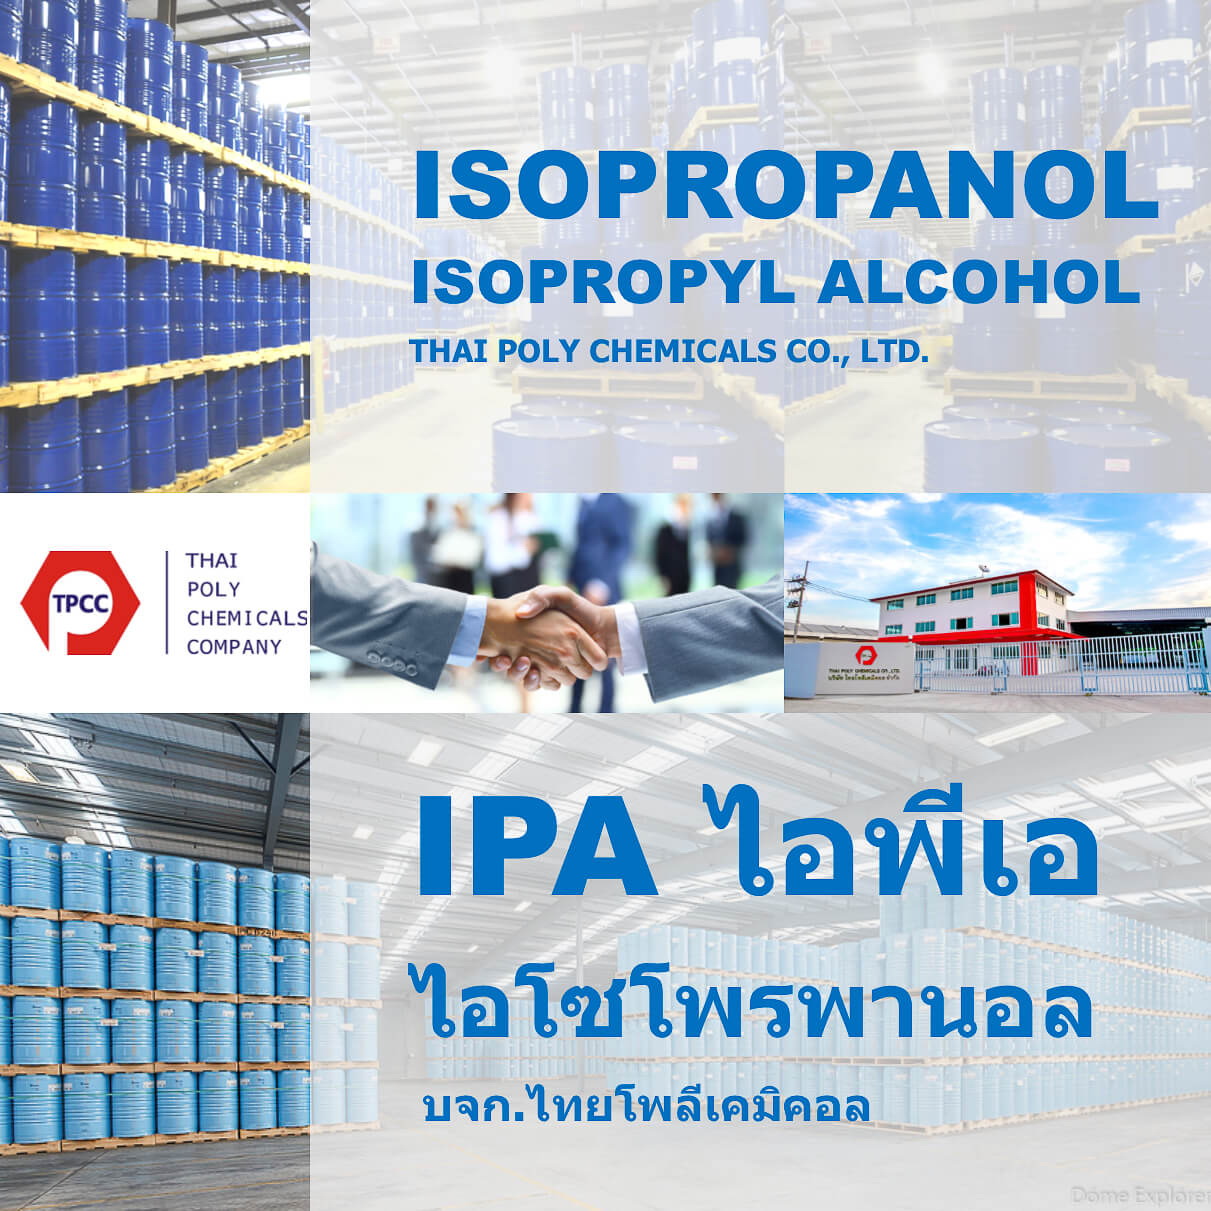 ไอโซโพรพานอล, Isopropanol, ไอโซโพรพิลแอลกอฮอล์, Isopropyl Alcohol, ไอพีเอ, IPA รูปที่ 1